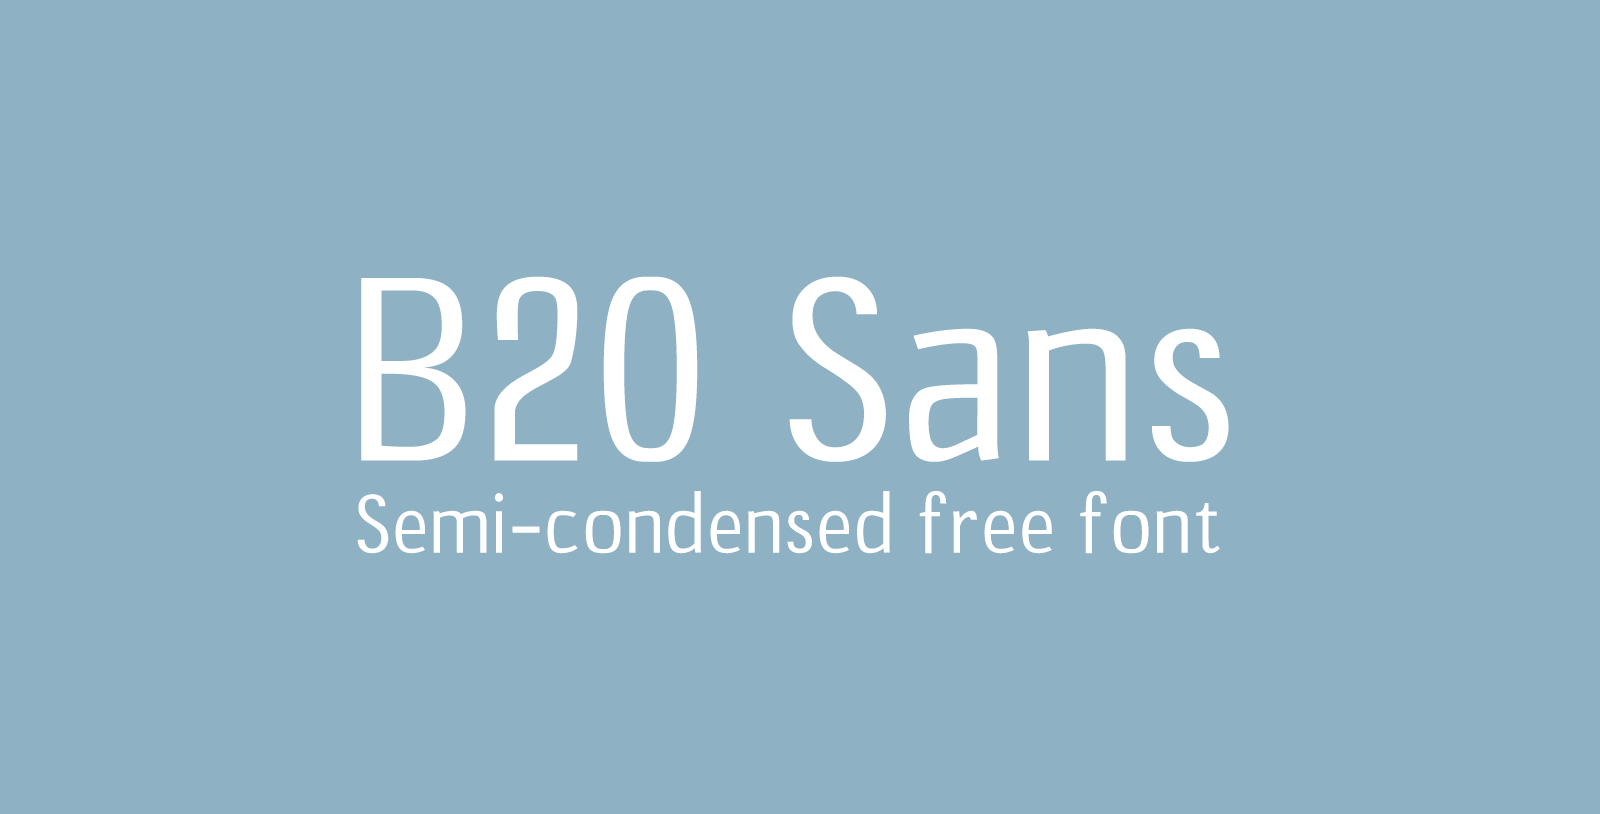 Шрифт B20 Sans